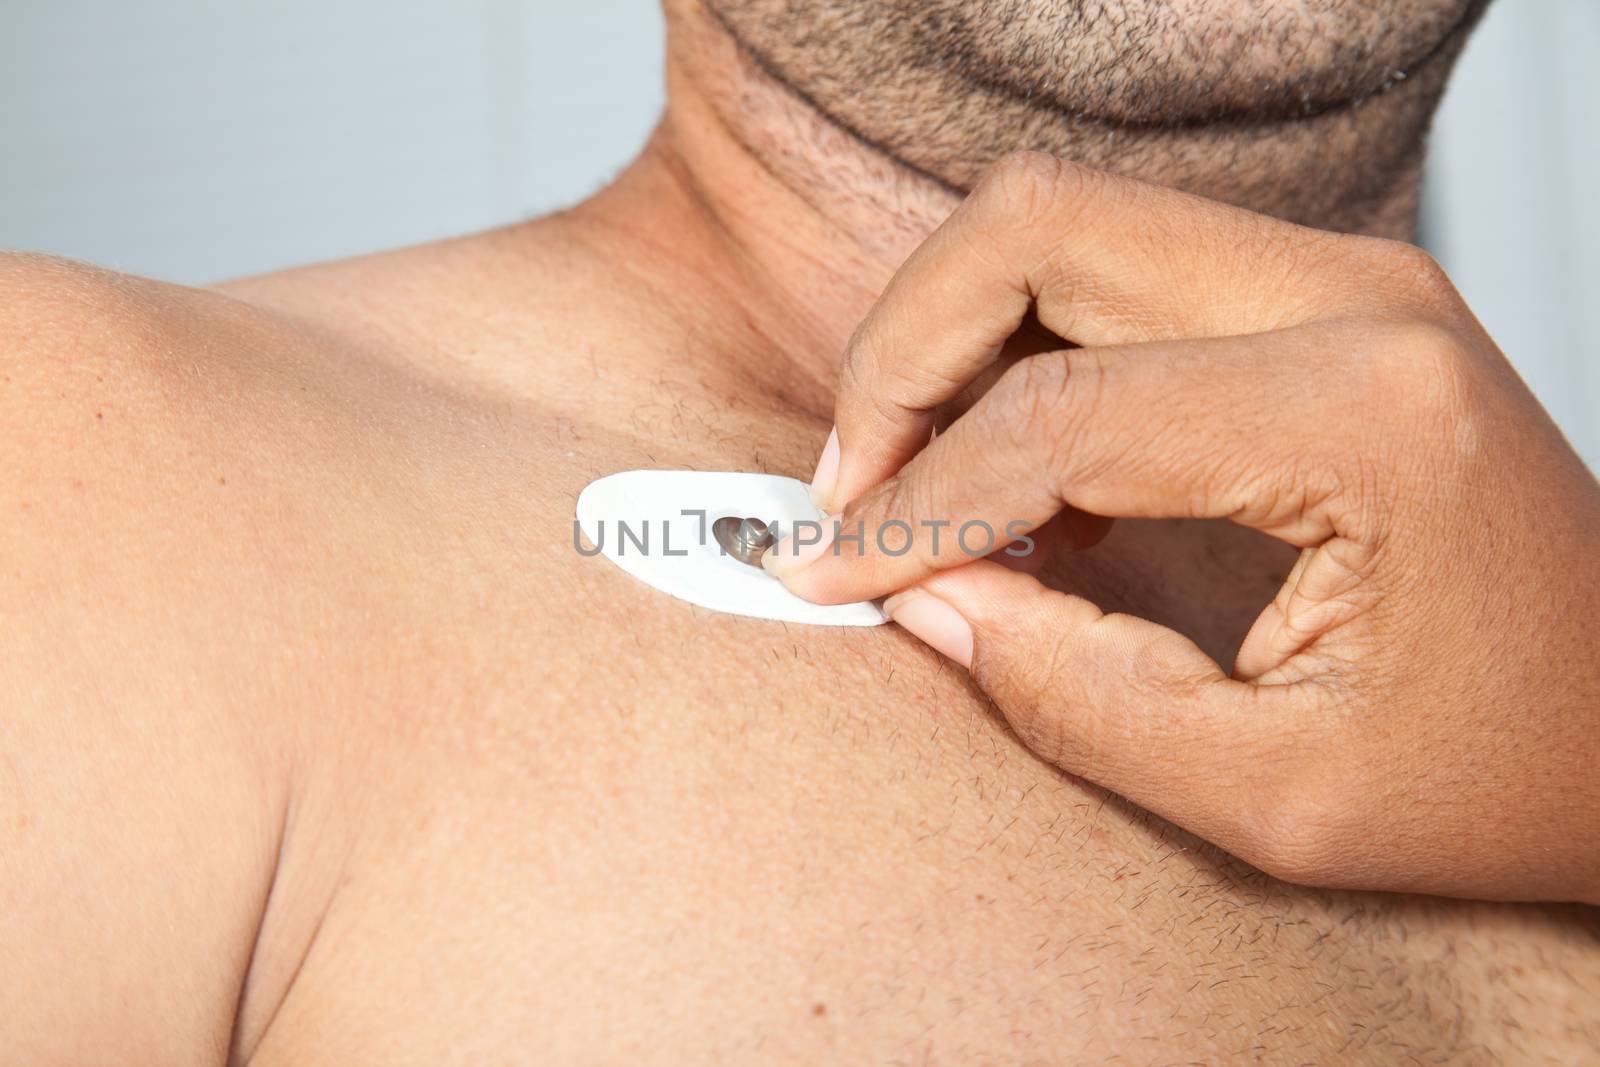 Nurse placing an electrode on patient's chest